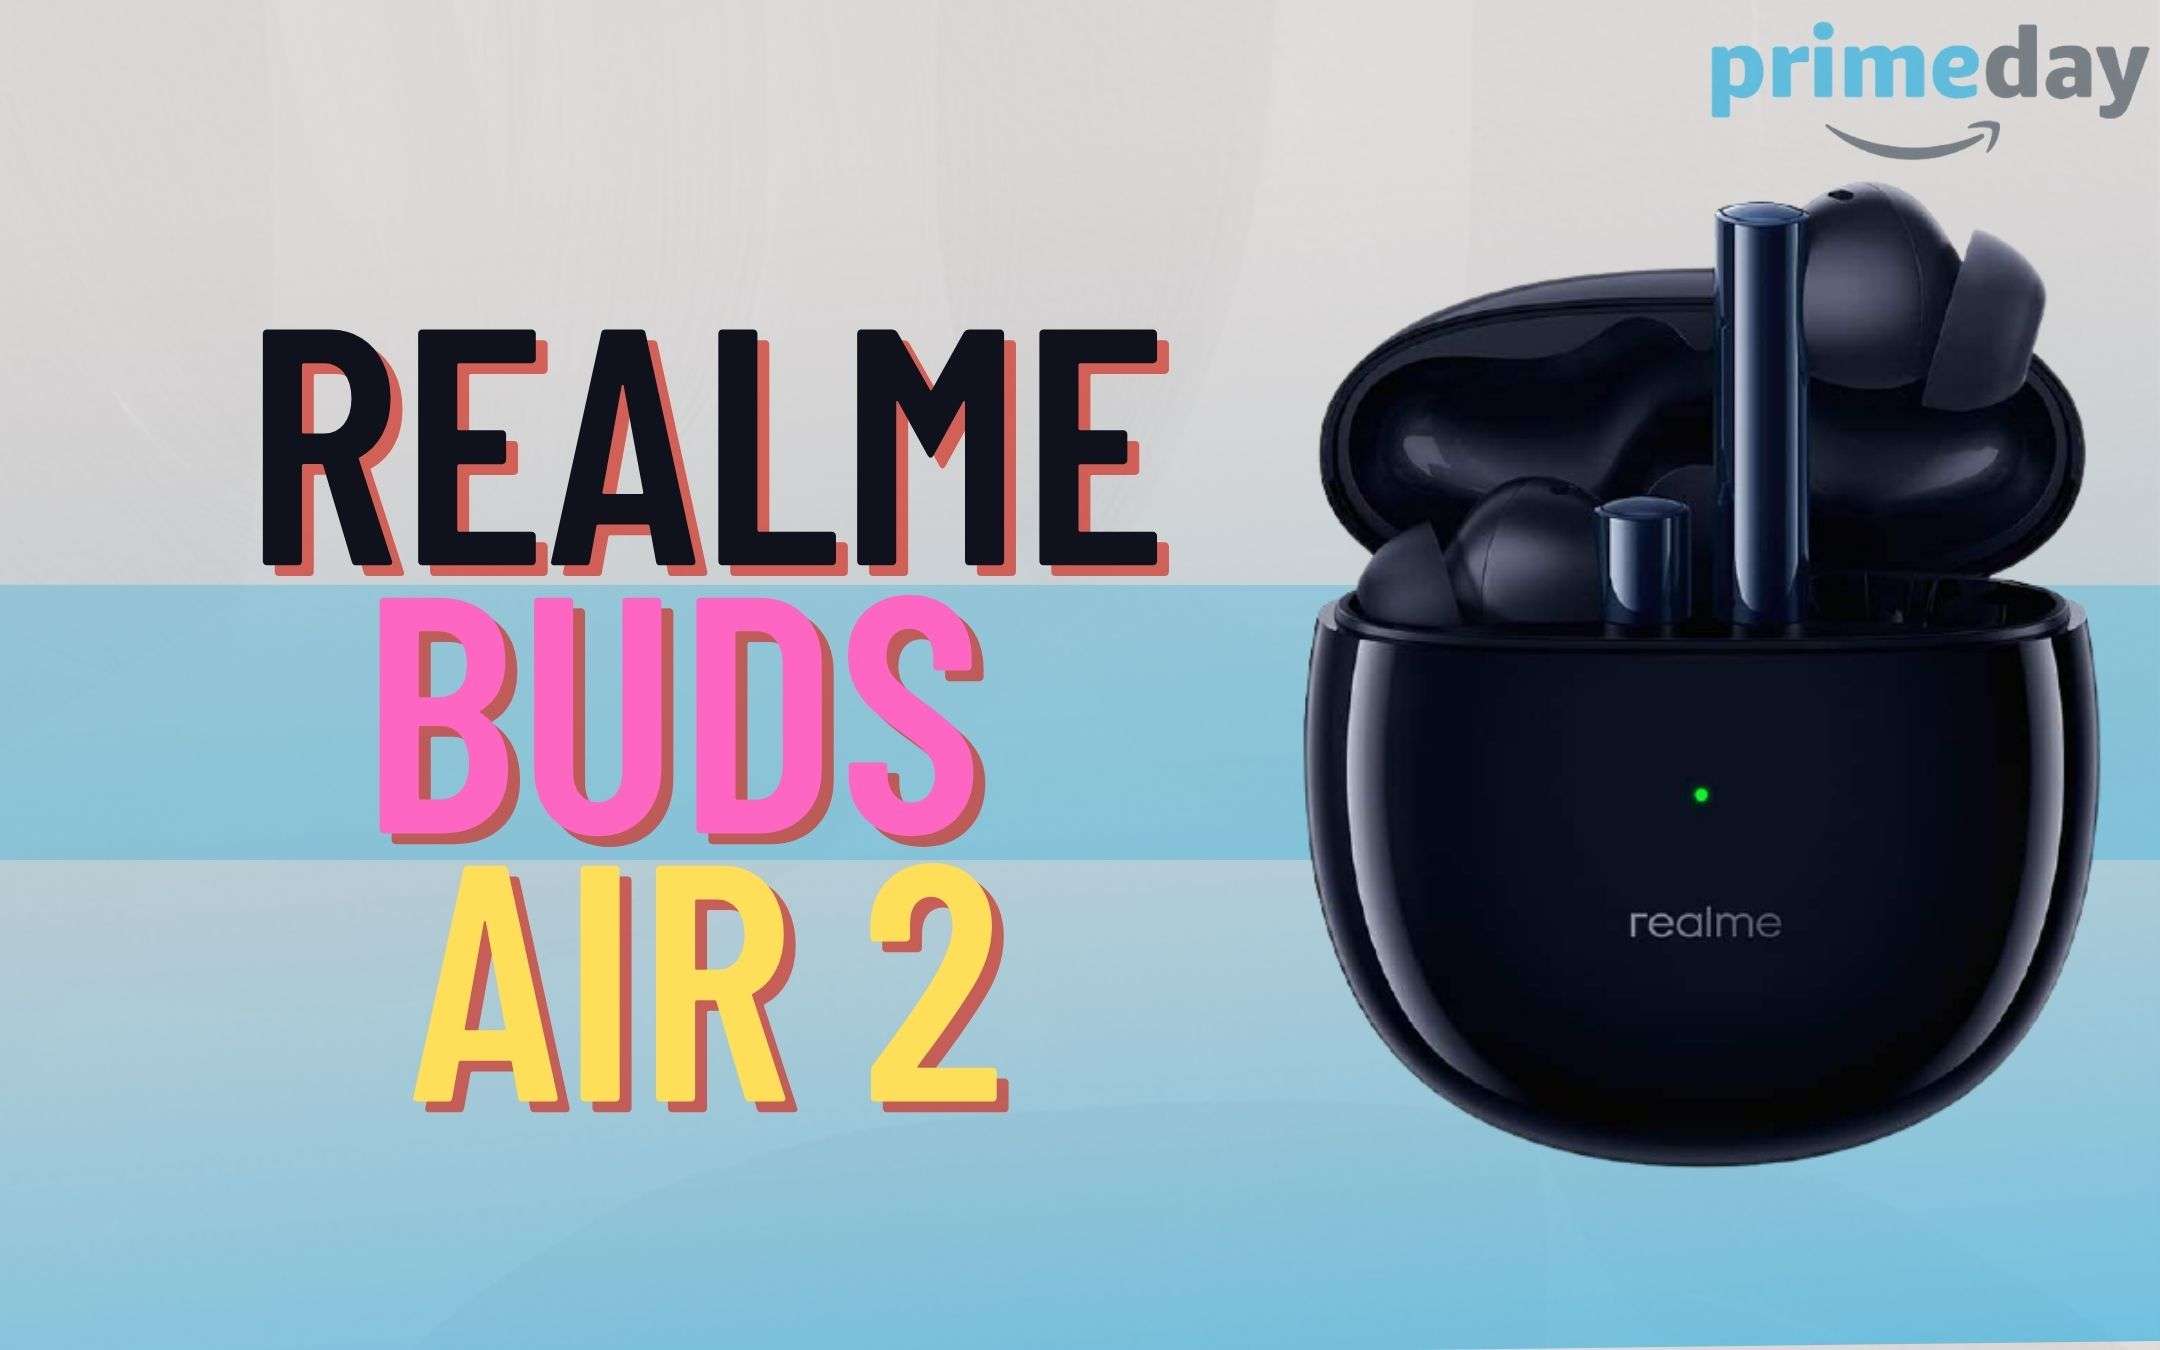 Realme Buds Air 2 comandano il PRIME DAY a ritmo di musica